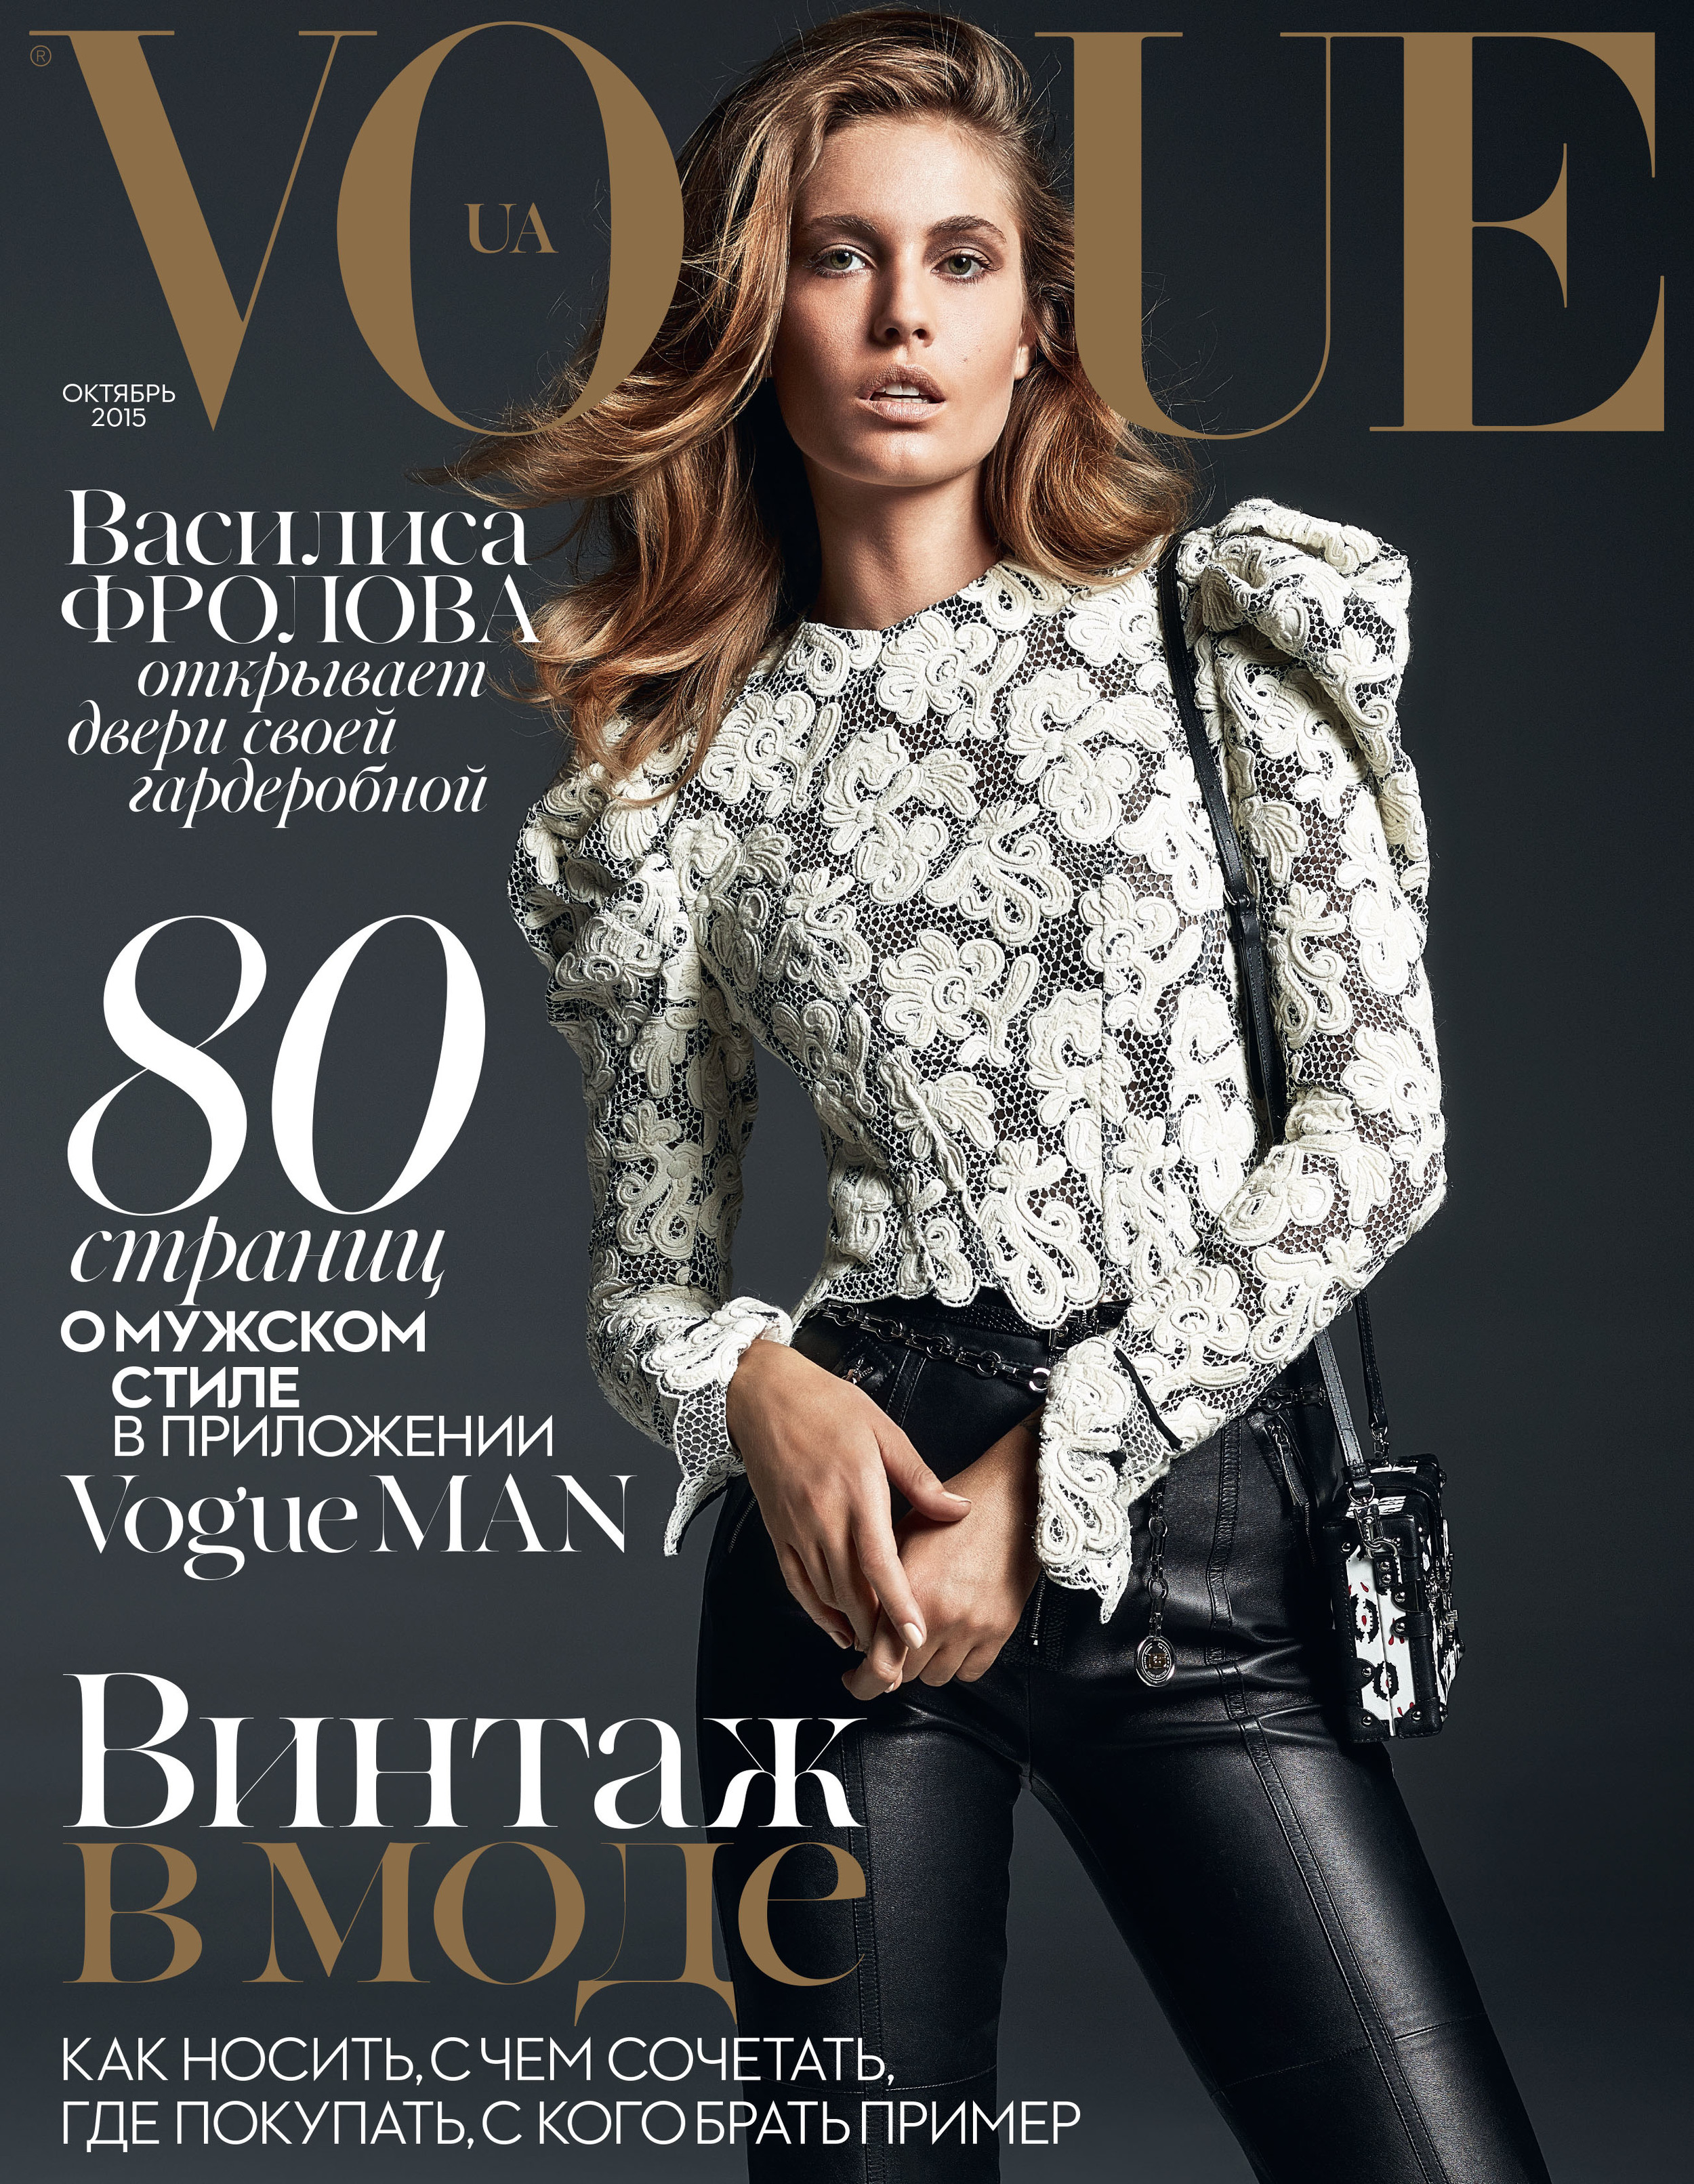 Журнал вог сайт. Журнал Vogue. Обложка Vogue. Красивые обложки журналов. Журнал мод.